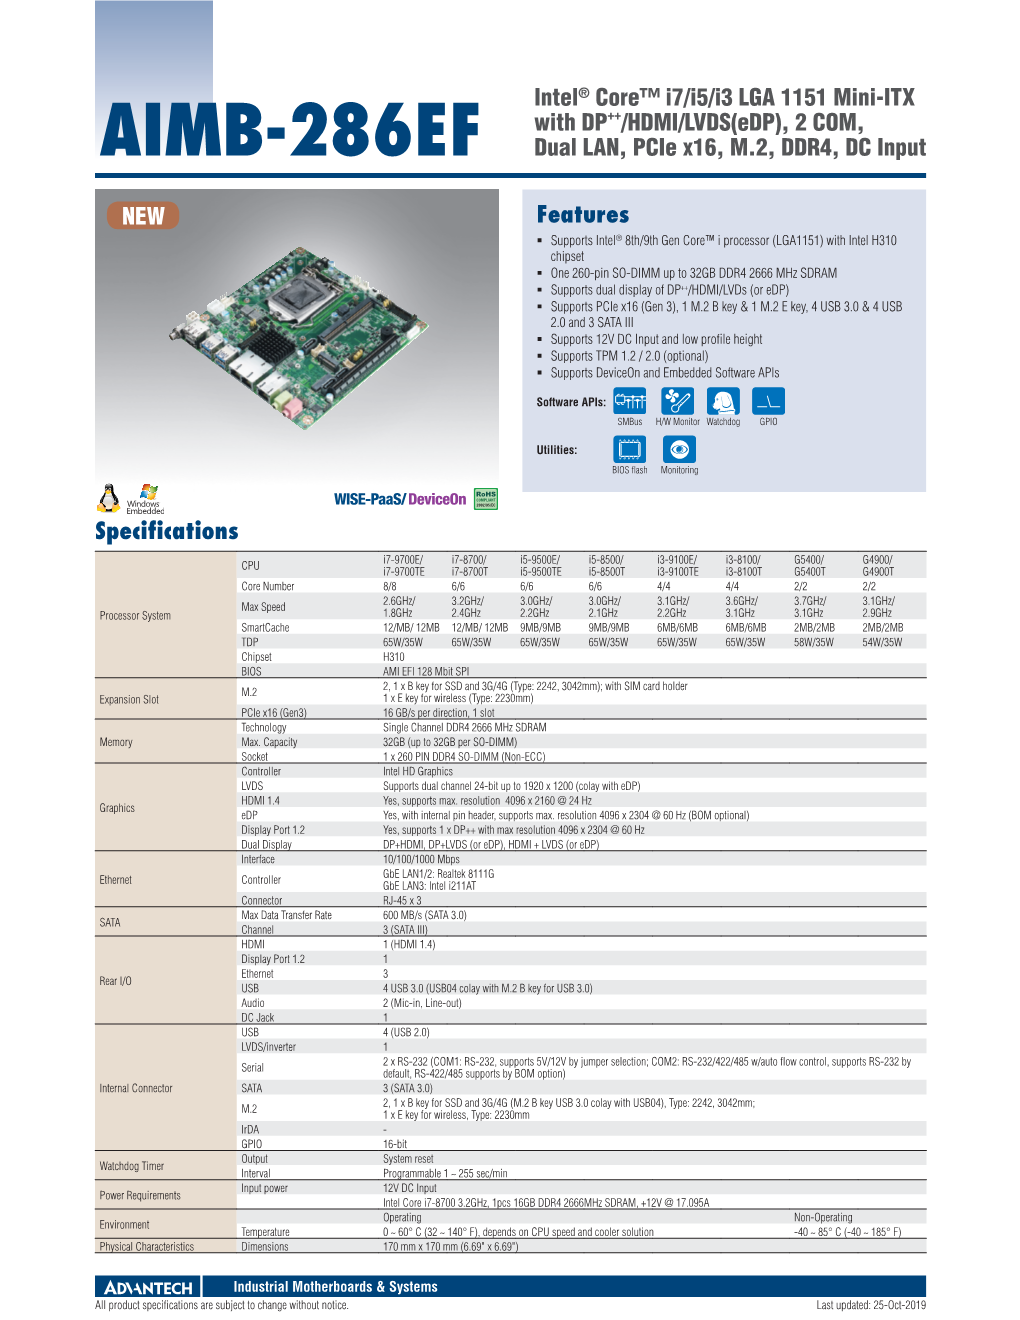 Features AIMB-286EF Intel® Core™ I7/I5/I3 LGA 1151 Mini-ITX with DP